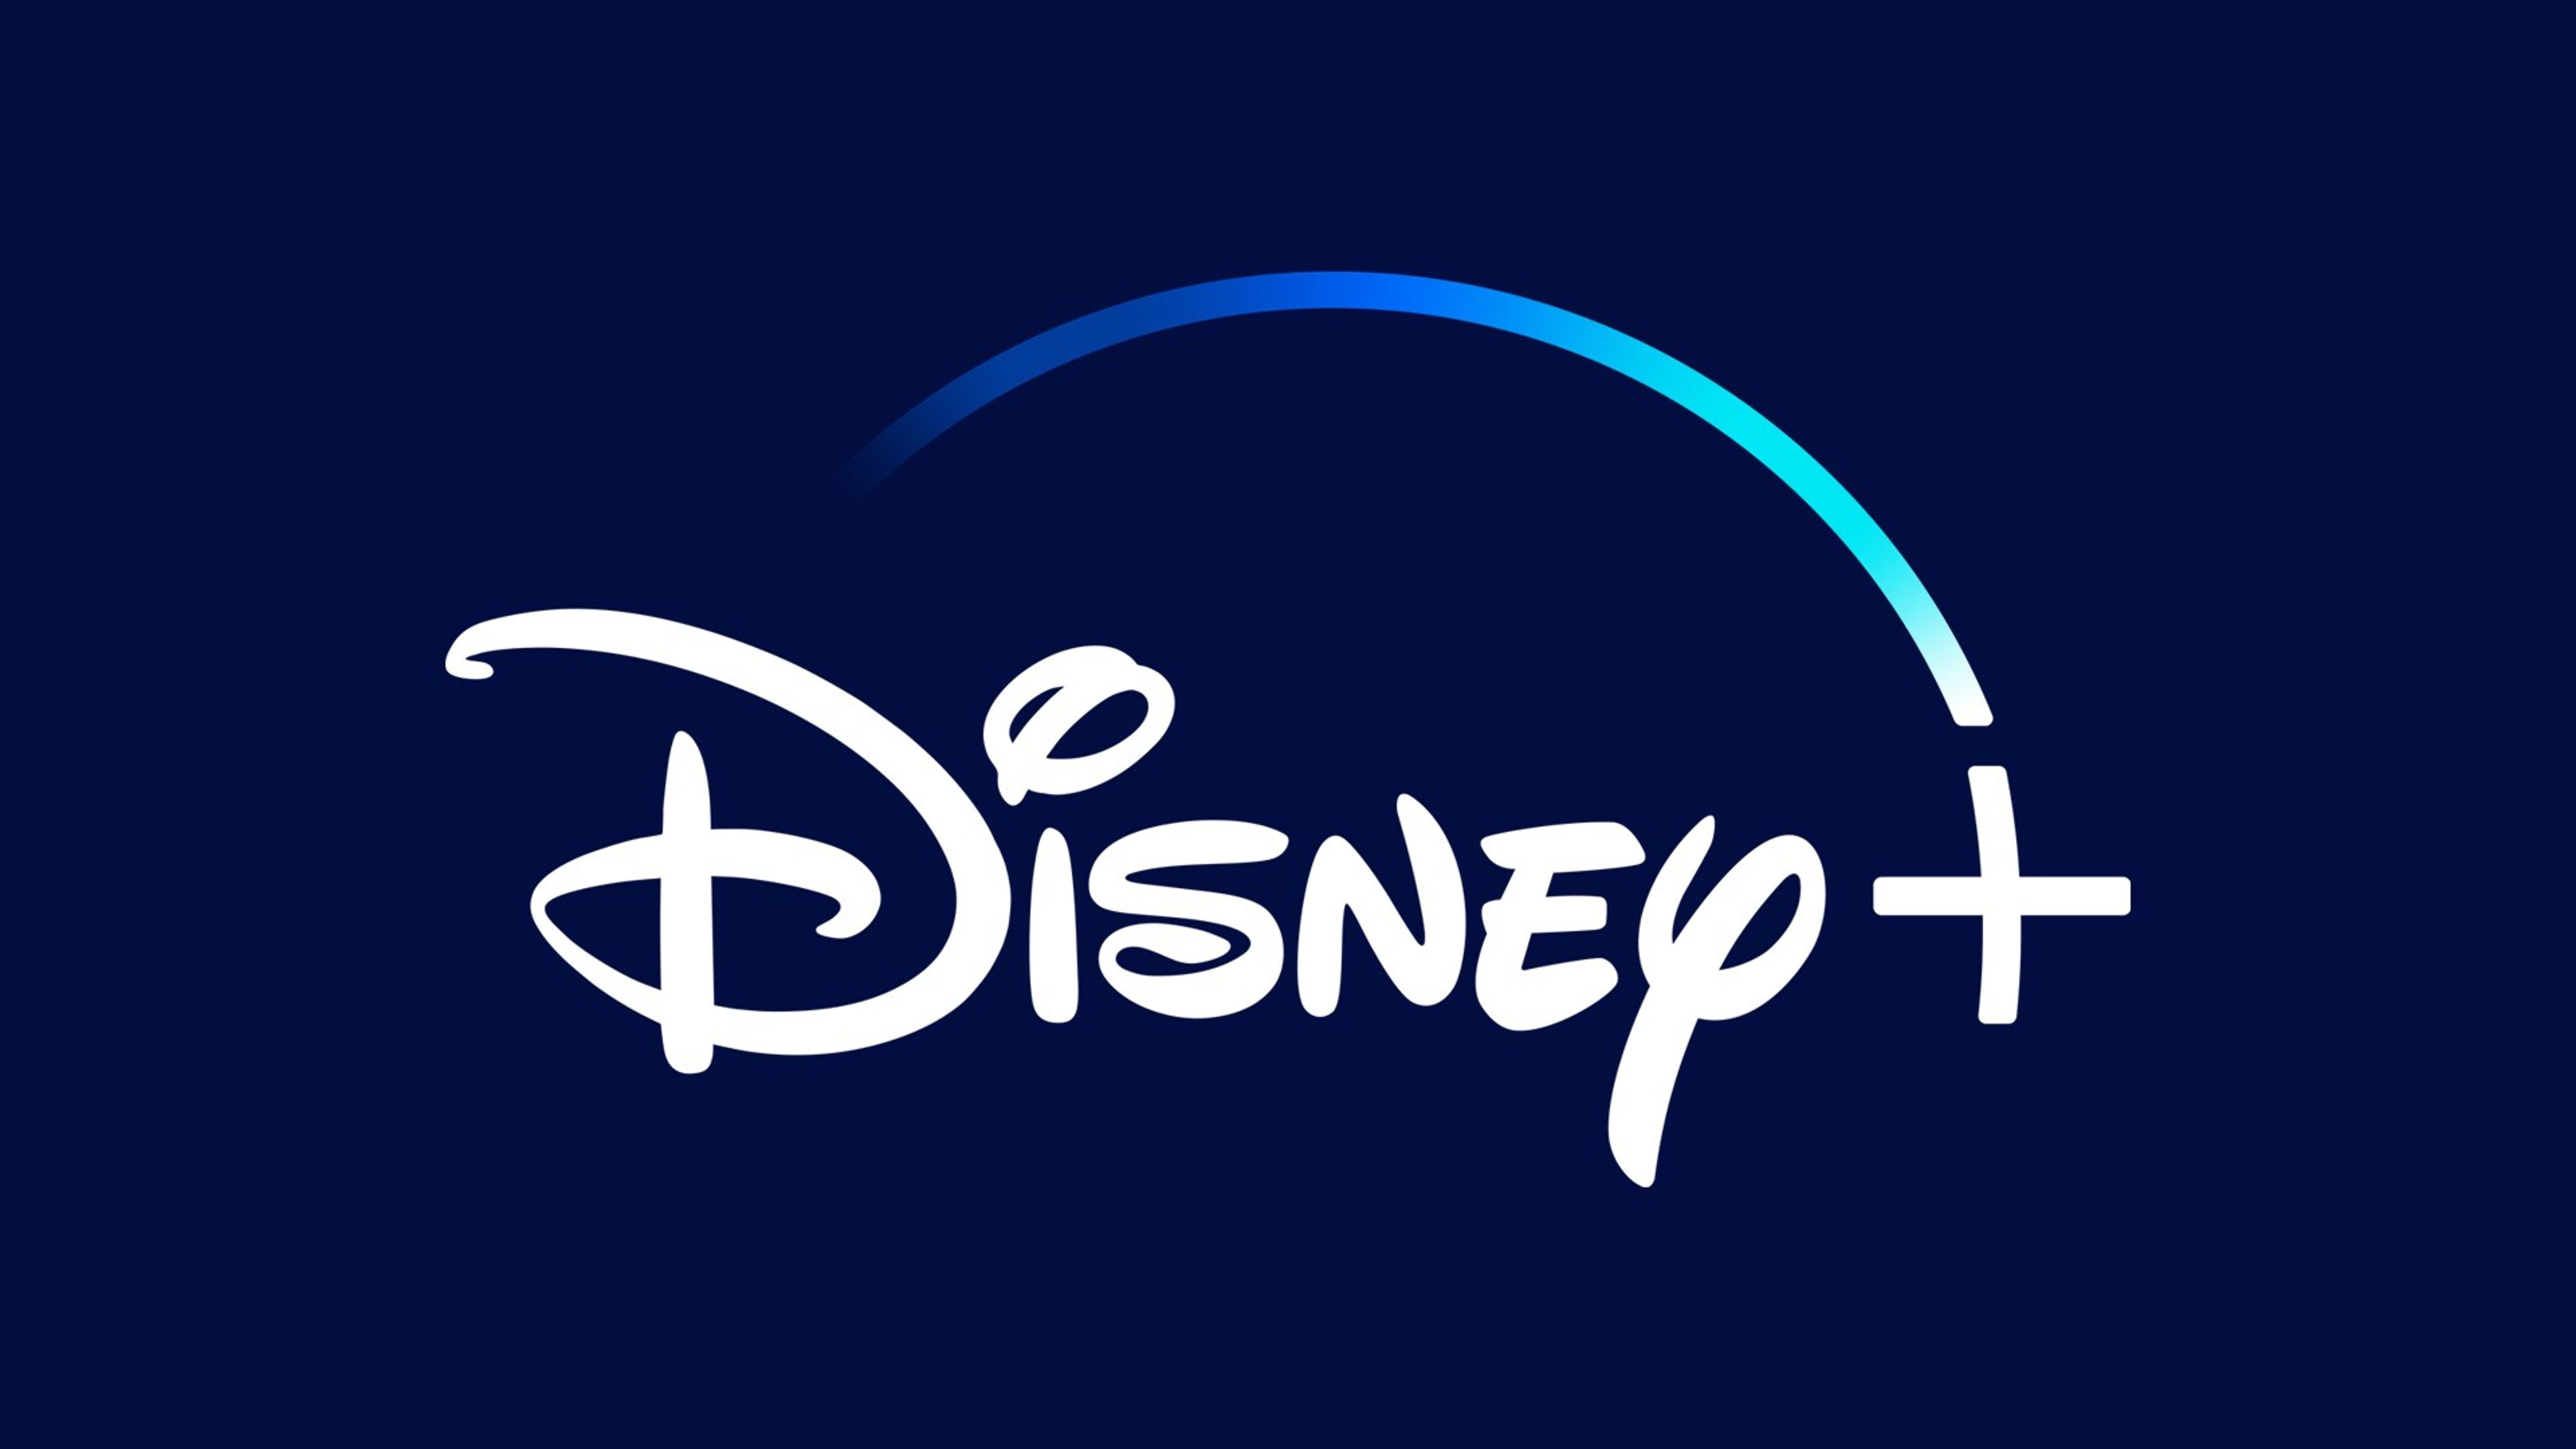 Disney+ in offerta: attiva la promo da 1,99 al mese per tre mesi Cover